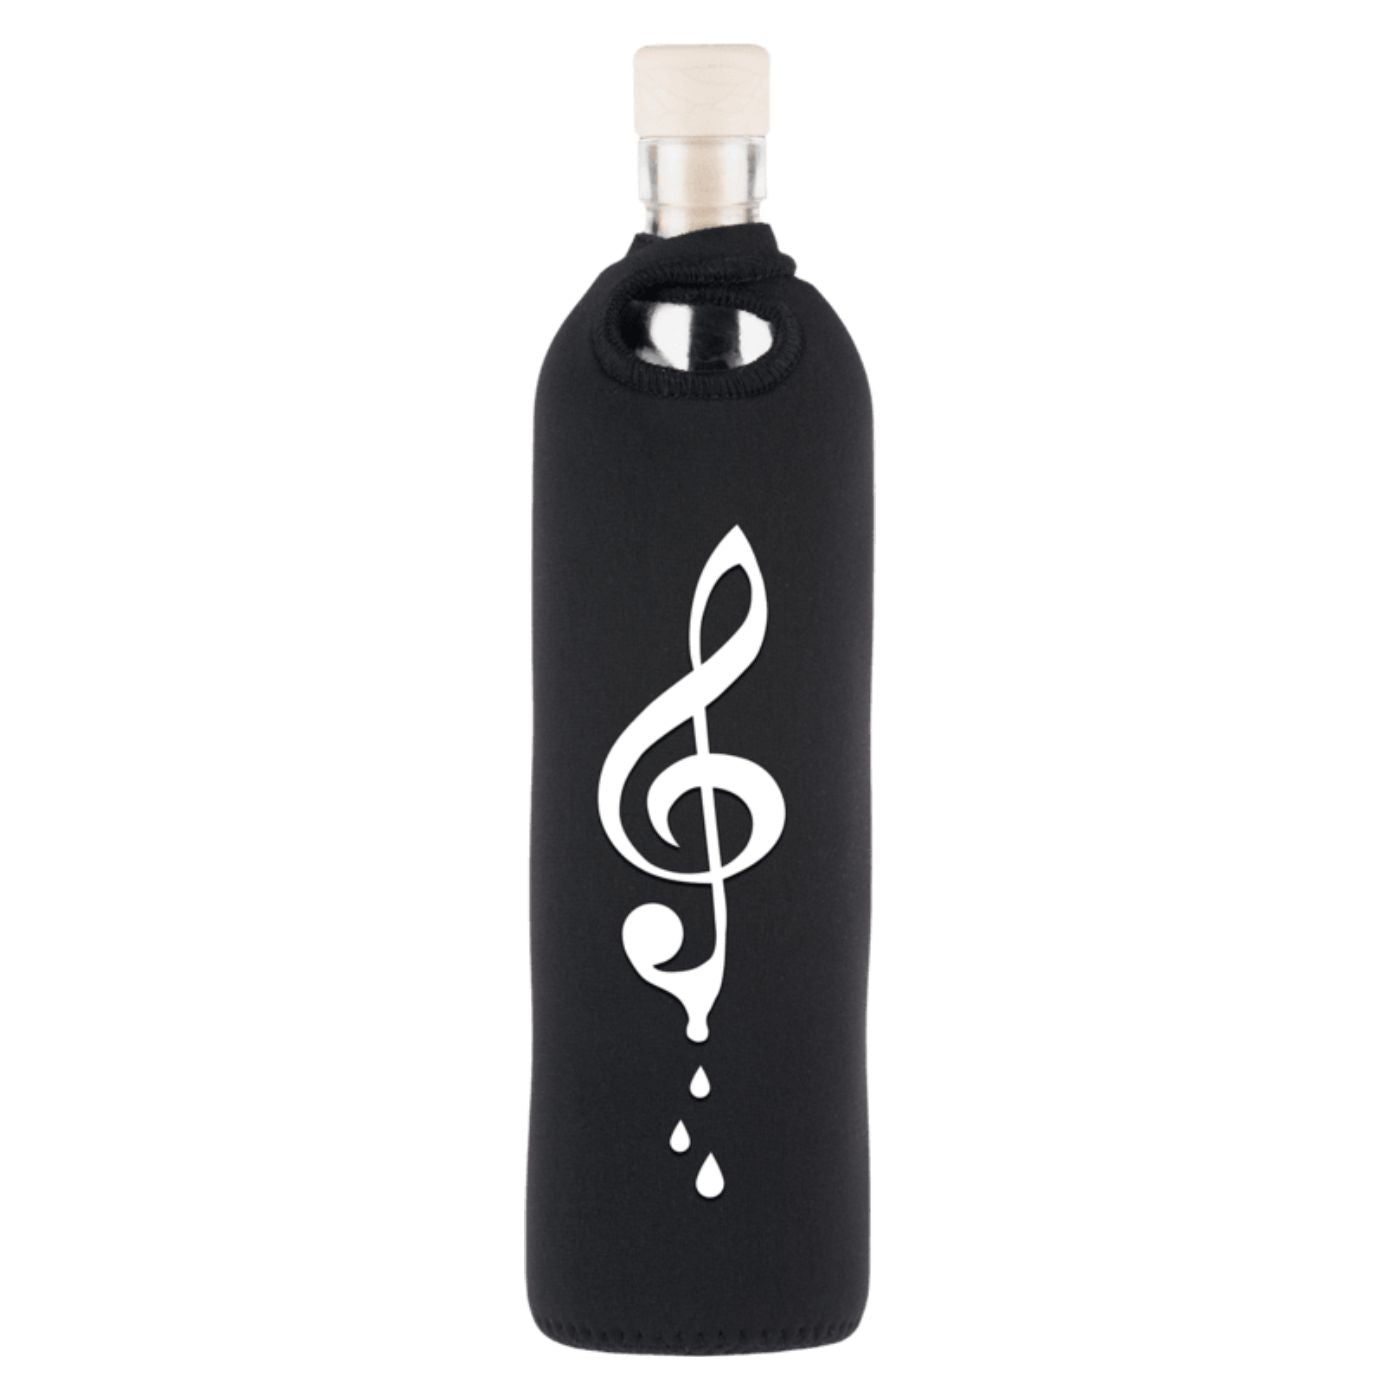 wiederverwendbare flaska glasflasche mit schwarzer neopren schutzhülle und symphonie design